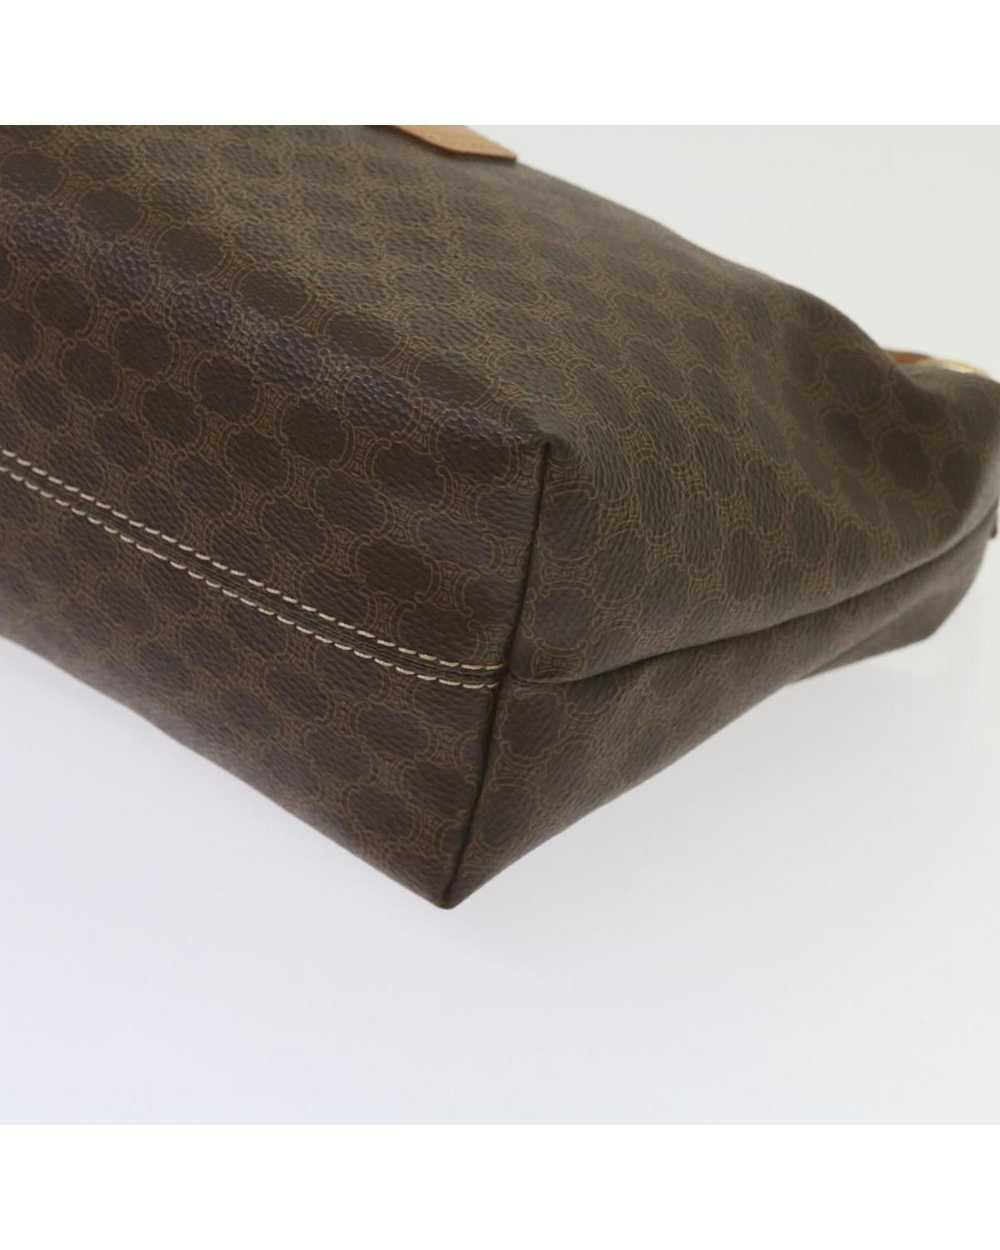 Celine Elegant Brown Canvas Bag by Luxury Designer - image 10